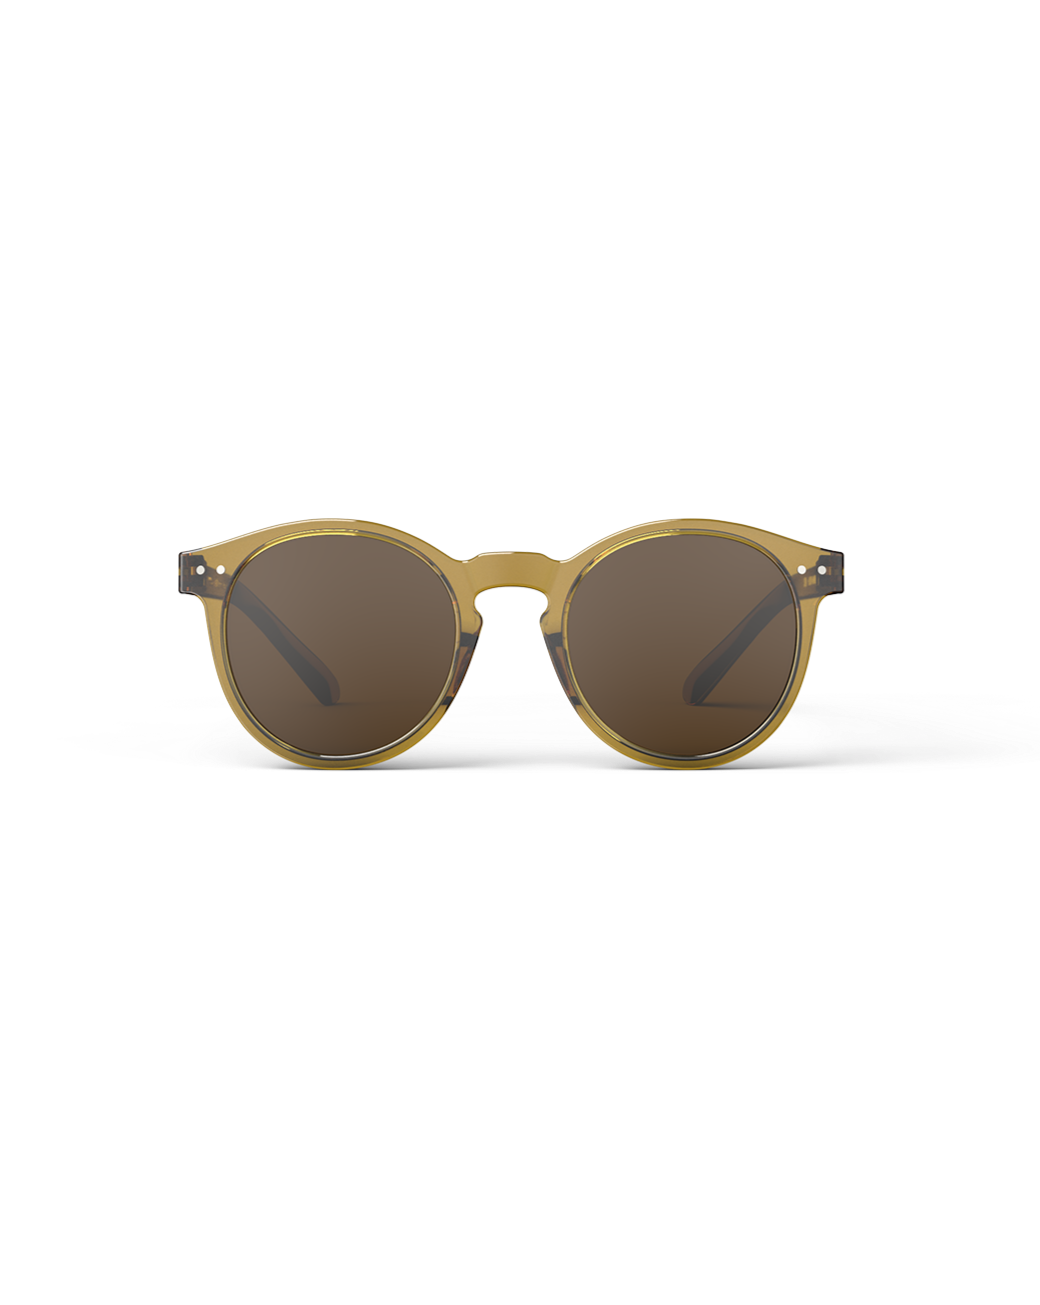 Sunglasses ‘Golden Green’ #M